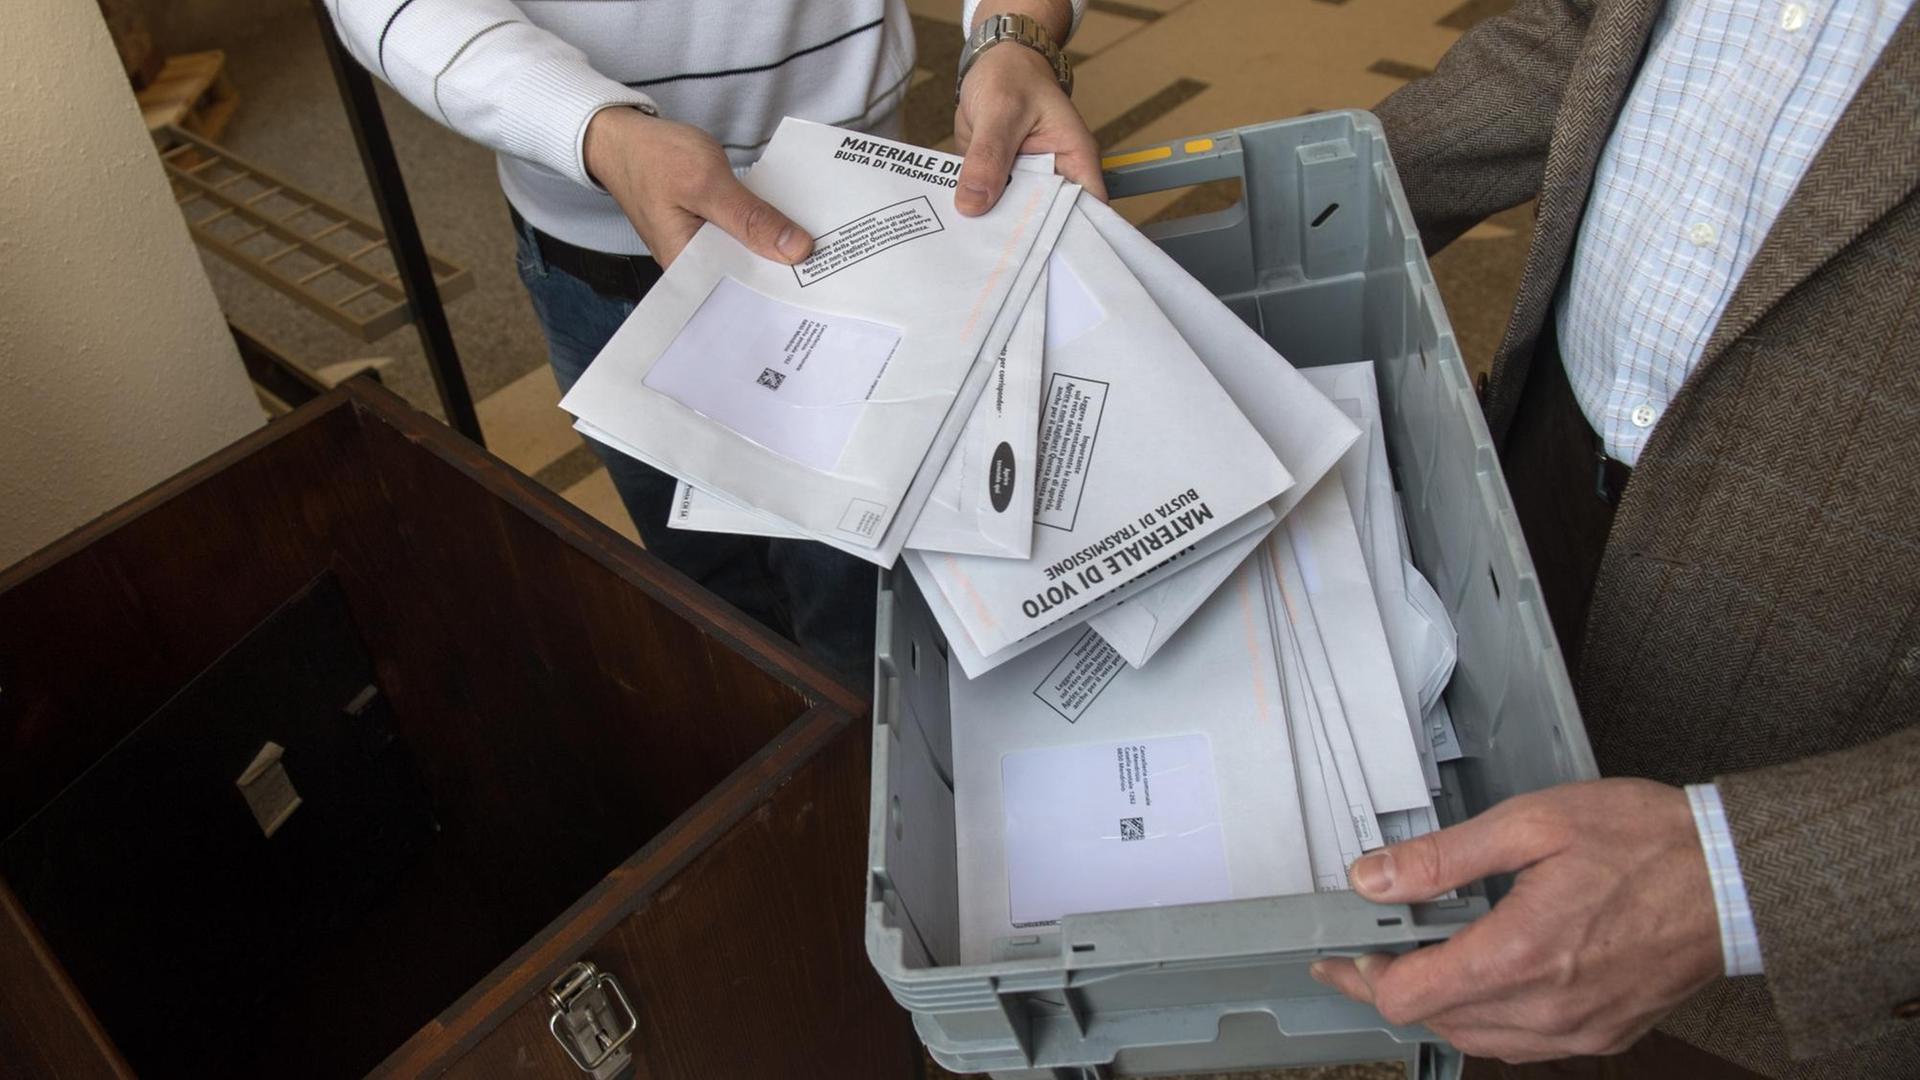 Zwei Hände halten einen Plastikkorb, zwei andere holen Wahlbriefe heraus.